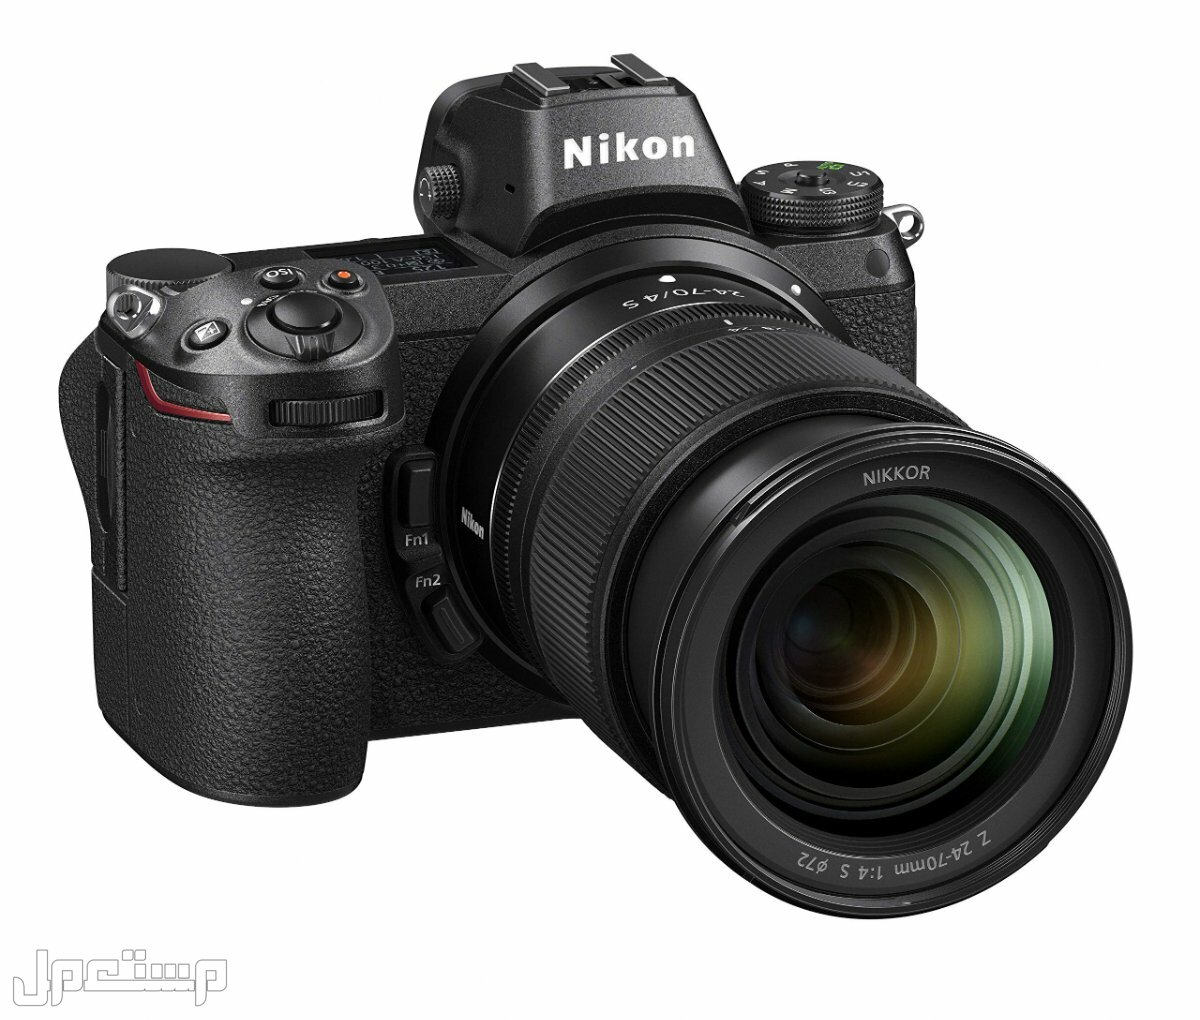 مواصفات ومميزات وأسعار أفضل أنواع كاميرات نيكون للمحترفين في موريتانيا كاميرا Nikon Z6